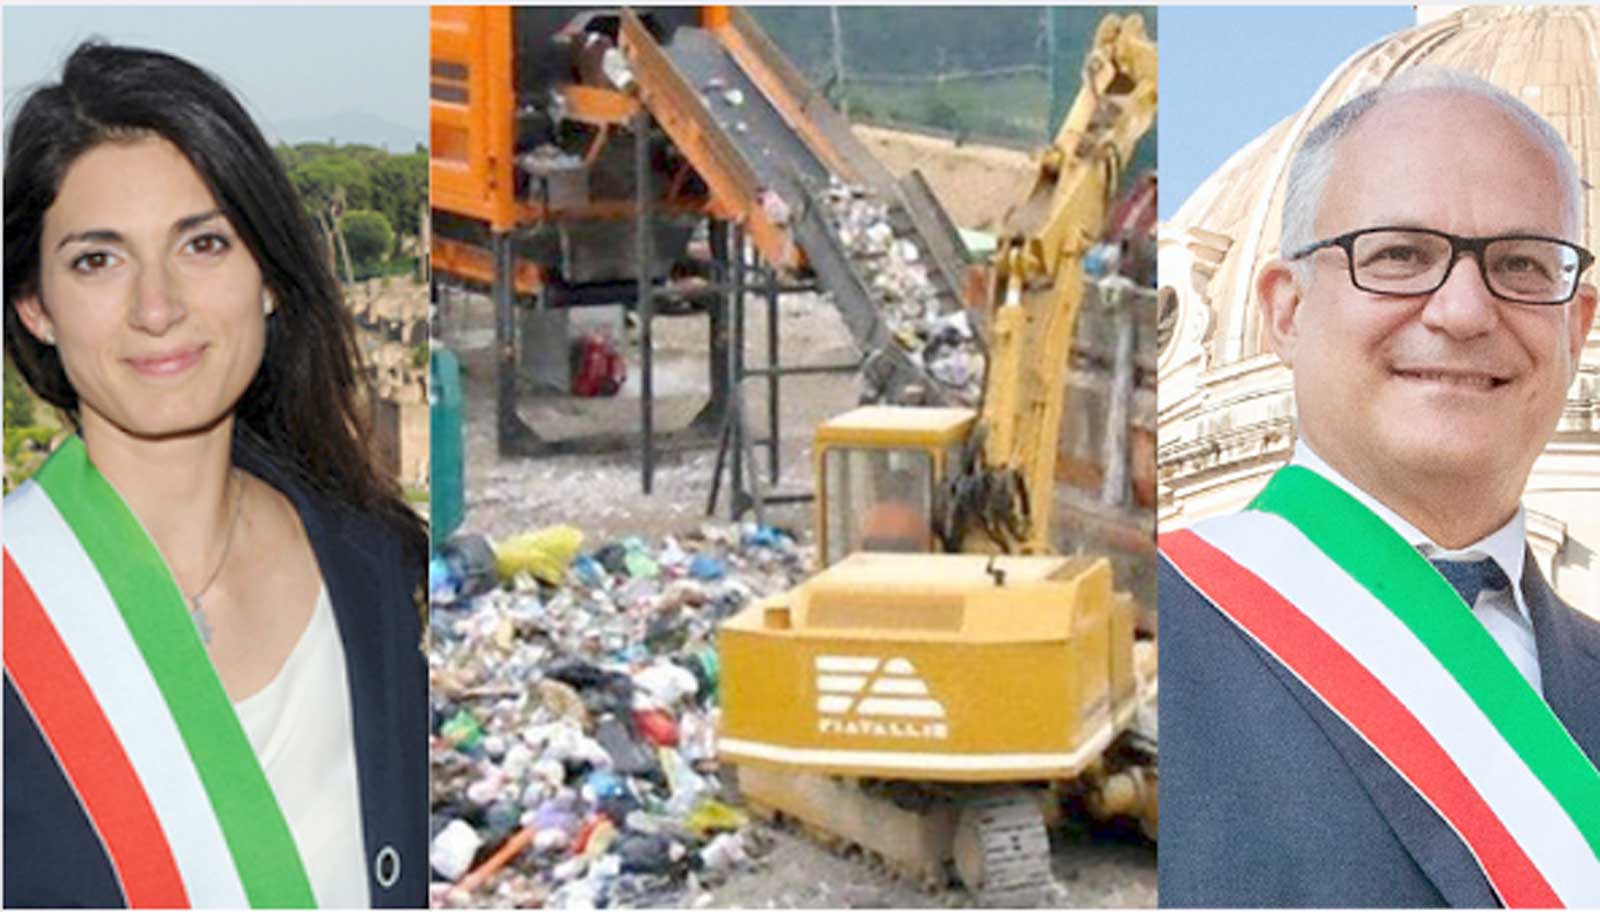 Da sinistra, l'ex sindaco Virginia Raggi, il tritovagliatore mobile di Ama attivo ad Ostia dal 2018, e l'attuale sindaco di Roma, Roberto Gualtieri